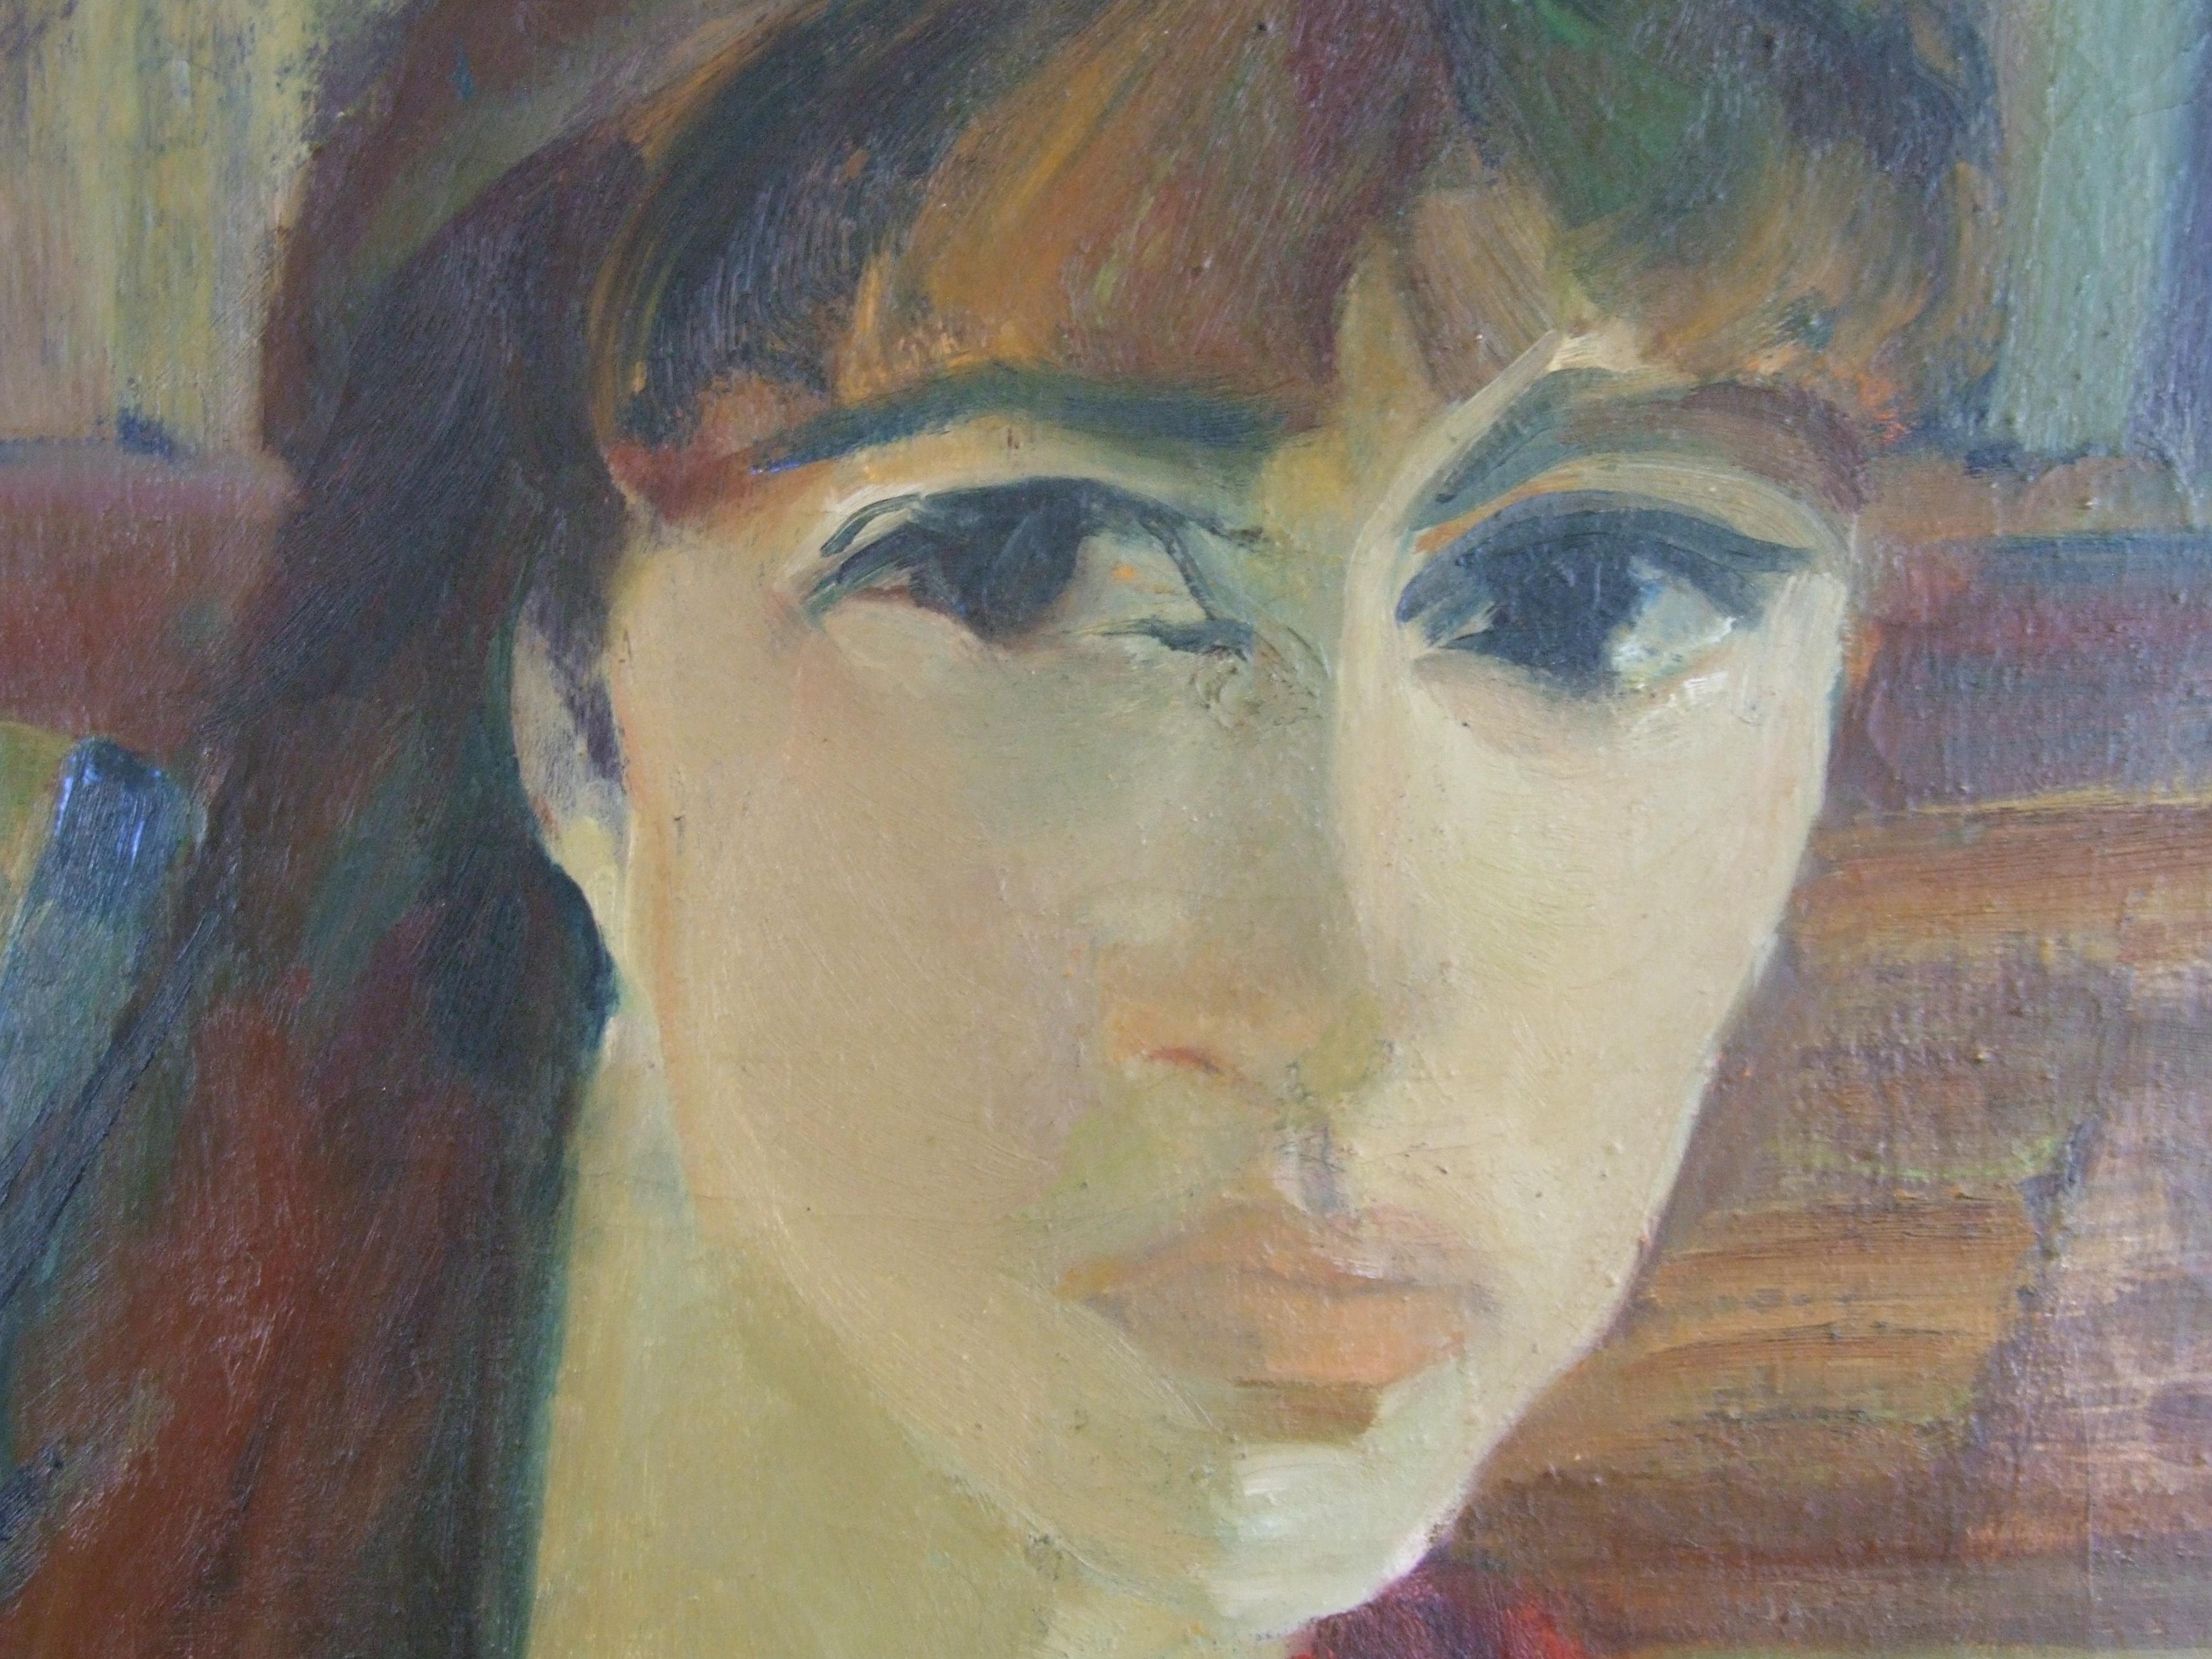 Porträt der Frau, 60er Jahre - Ölfarbe, 55x33 cm. (Impressionismus), Painting, von Lucien Joseph Fontanarosa